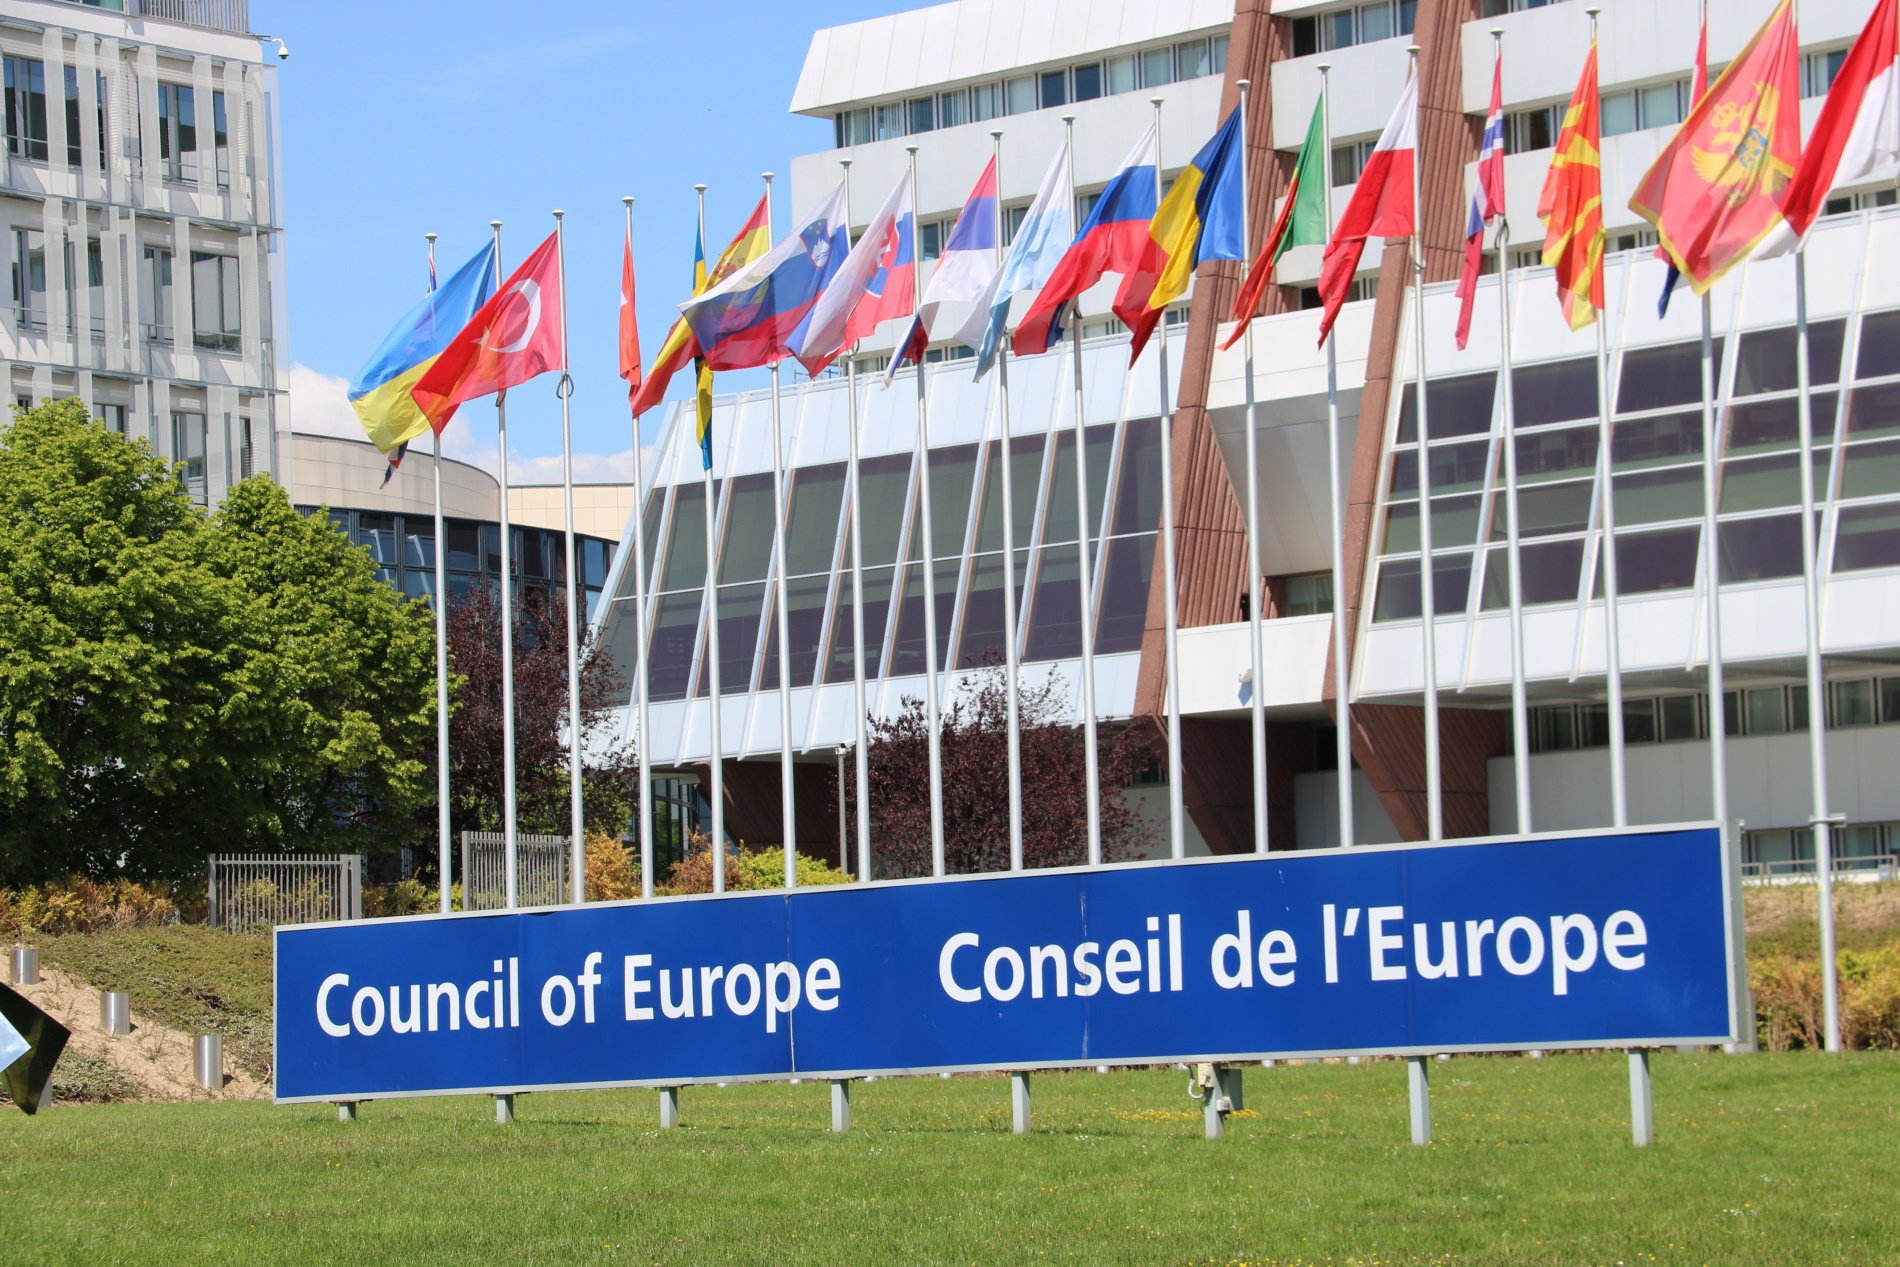 Una comissària del Consell d'Europa reacciona al cas Pegasus: "Estic alarmada"